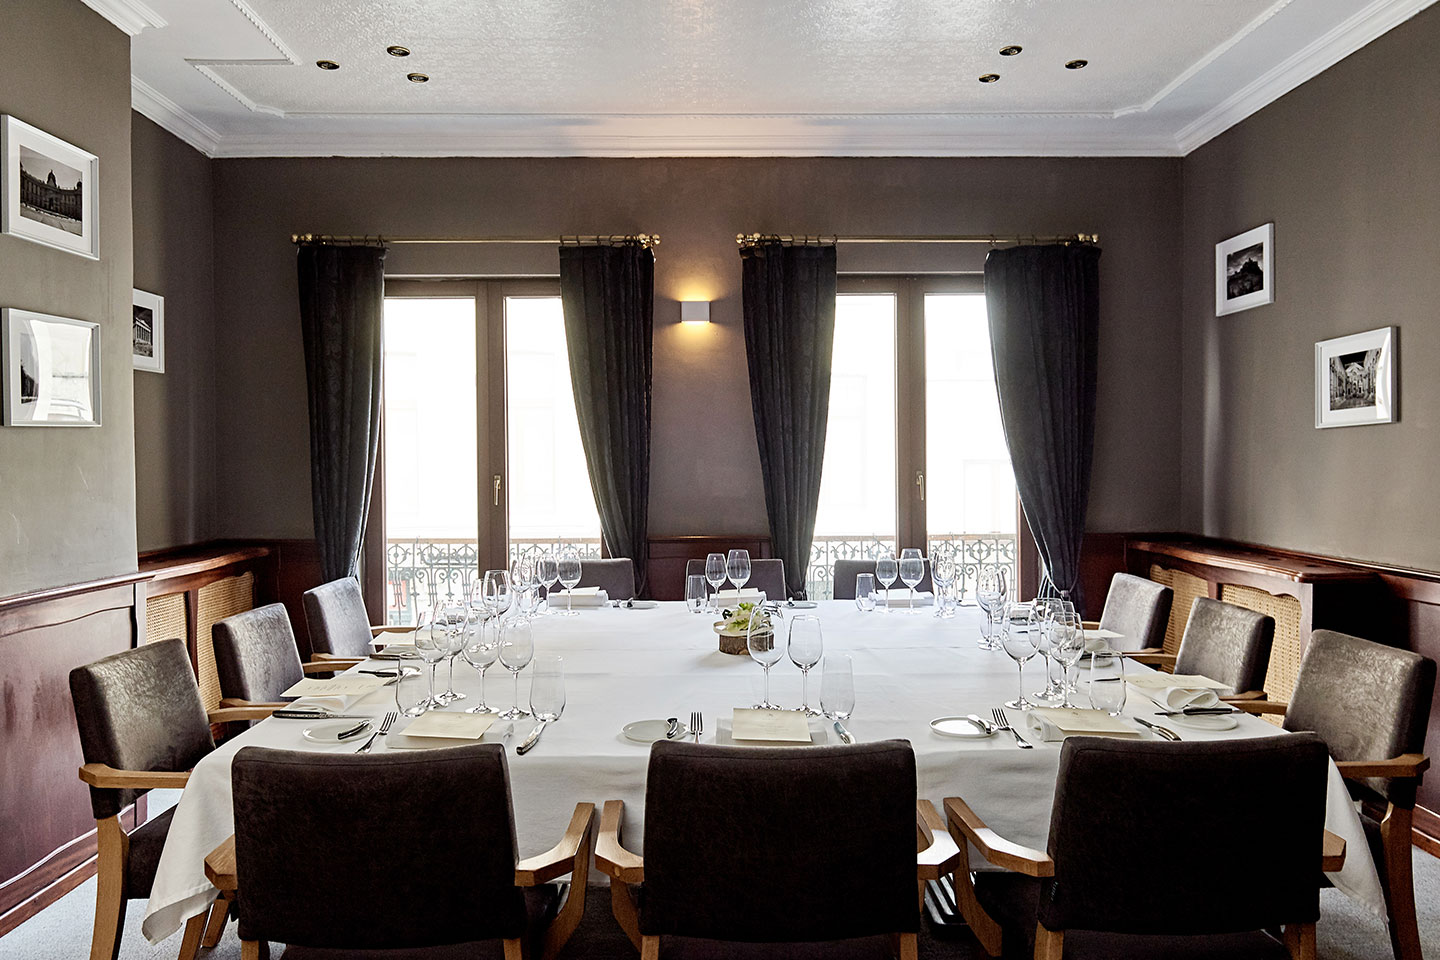 Salon privé - Stirwen - Etterbeek - Bruxelles - Cuisine Gastronomique - salle privative repas affaire événements privés